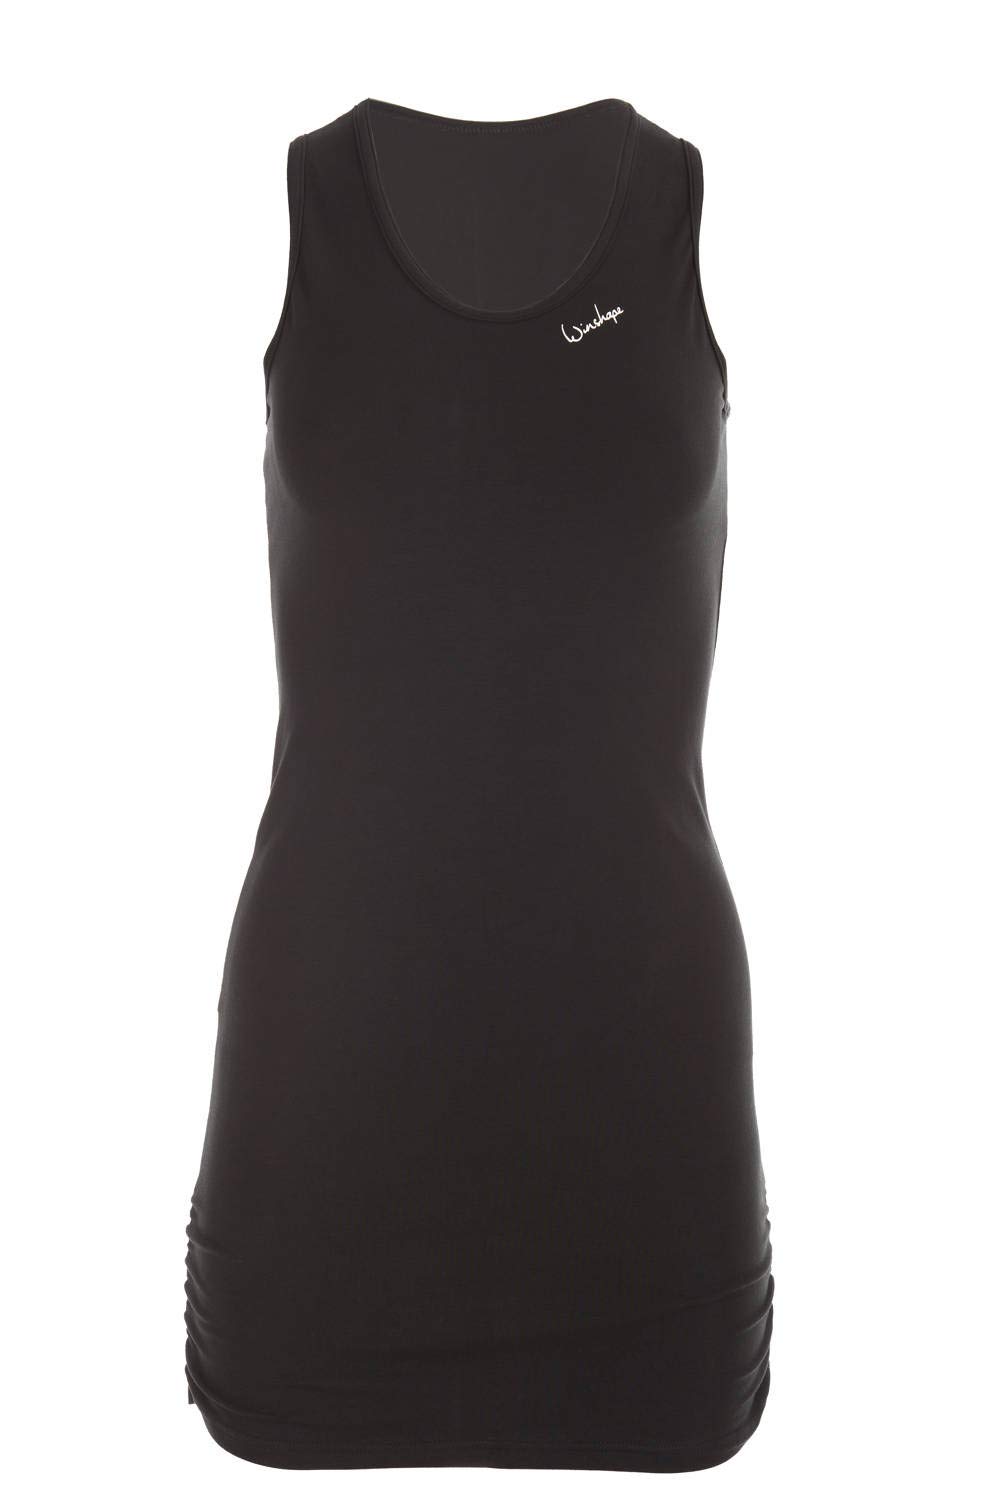 Winshape Damen Fitness Freizeit Longtop WTR15 mit seitlicher Raffung, Slim Style, schwarz, S